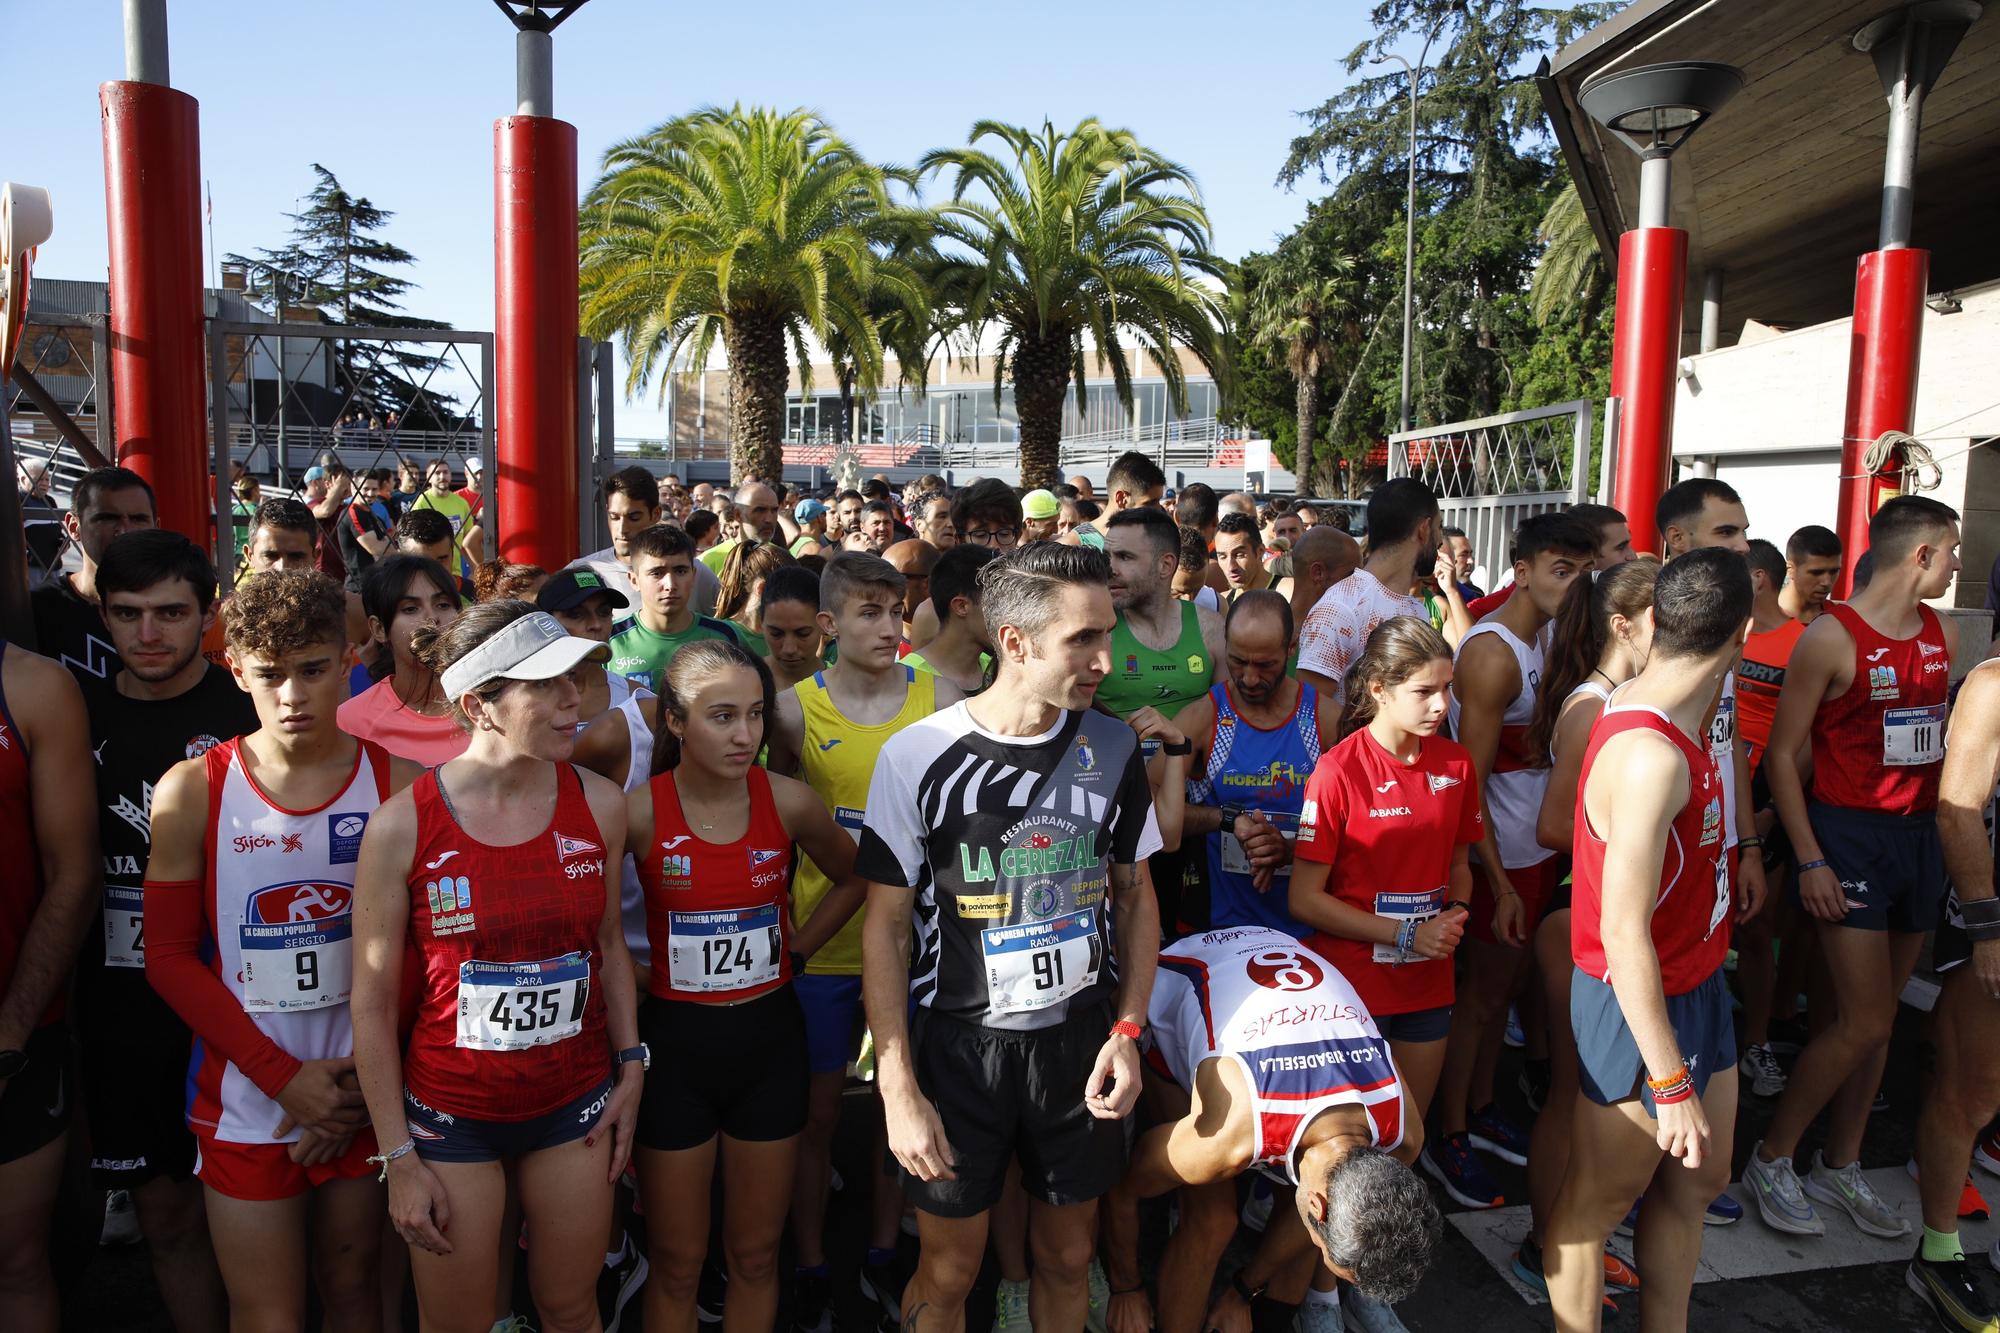 EN IMÁGENES: Carrera del Grupo Covadonga y el Club de Natación Santa Olaya en Gijón